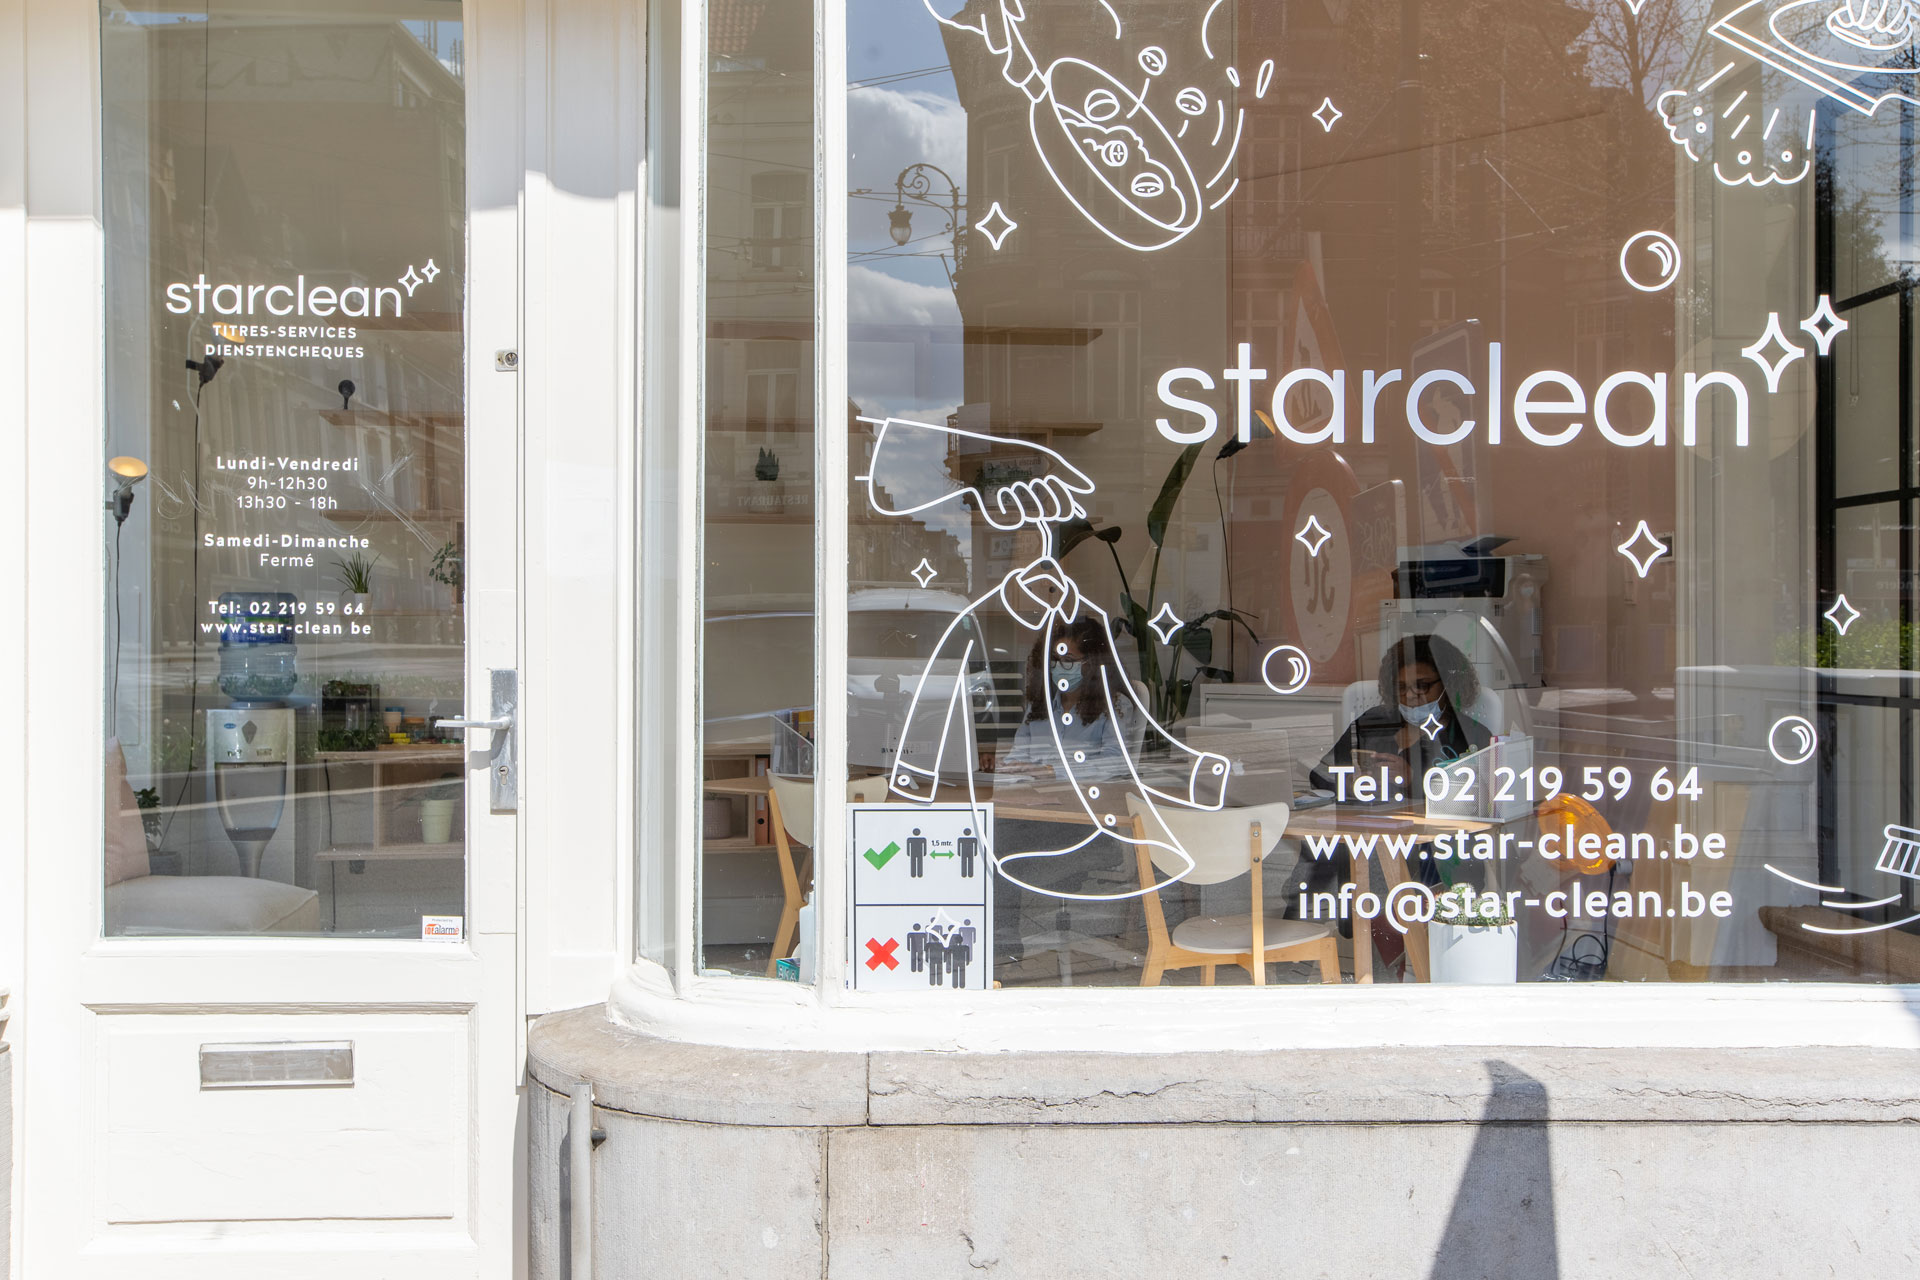 starclean-facade